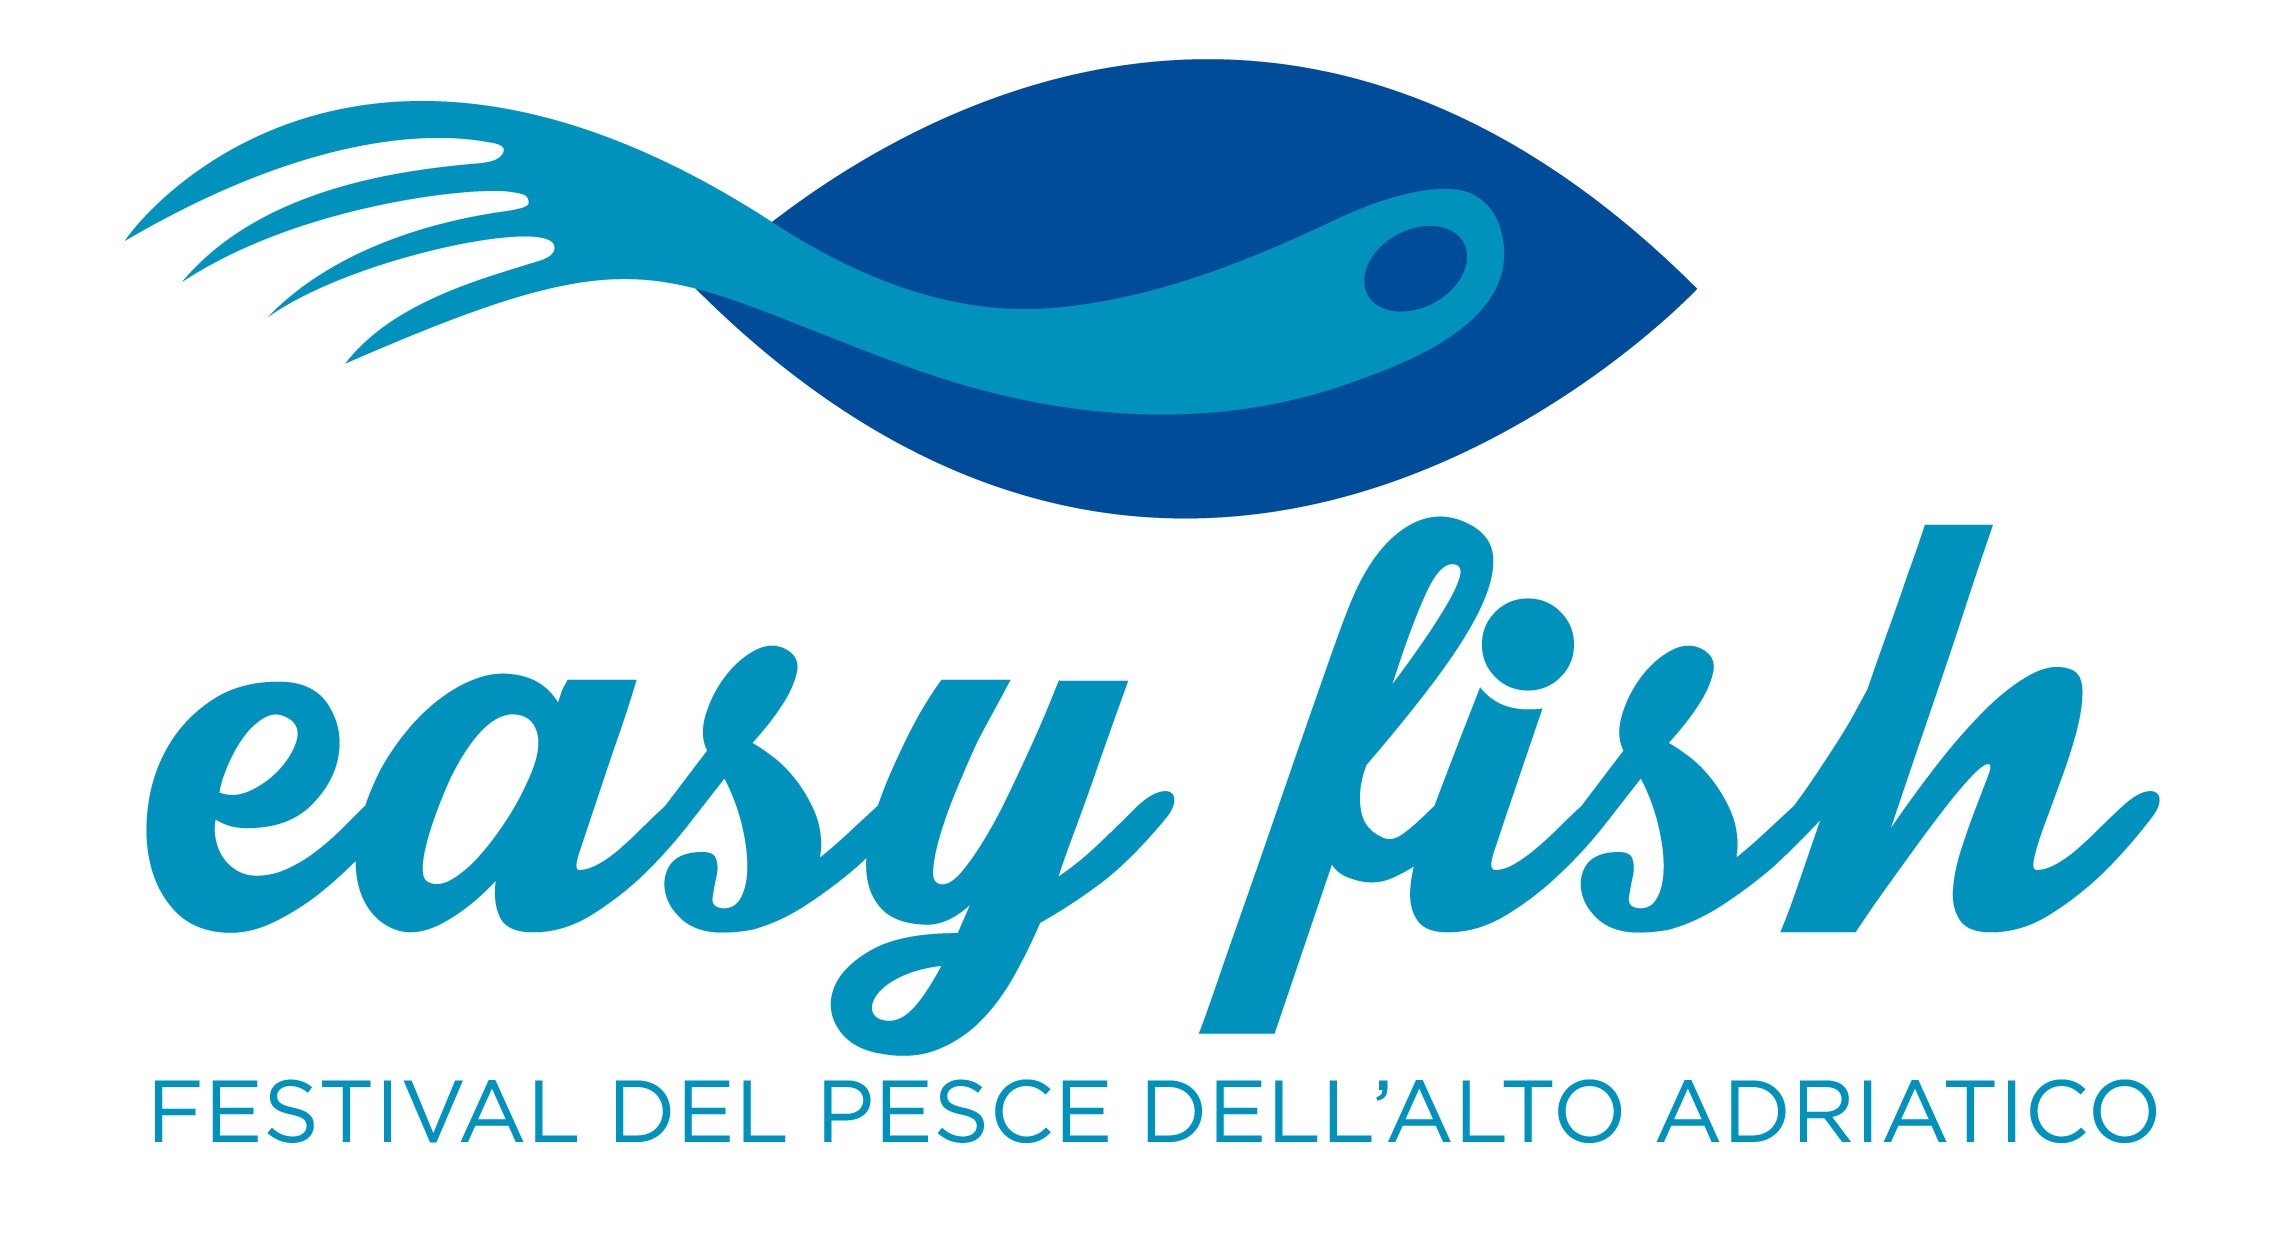 Easy Fish, la nuova rassegna enogastronomica della Terrazza a Mare di Lignano Sabbiadoro (UD) 